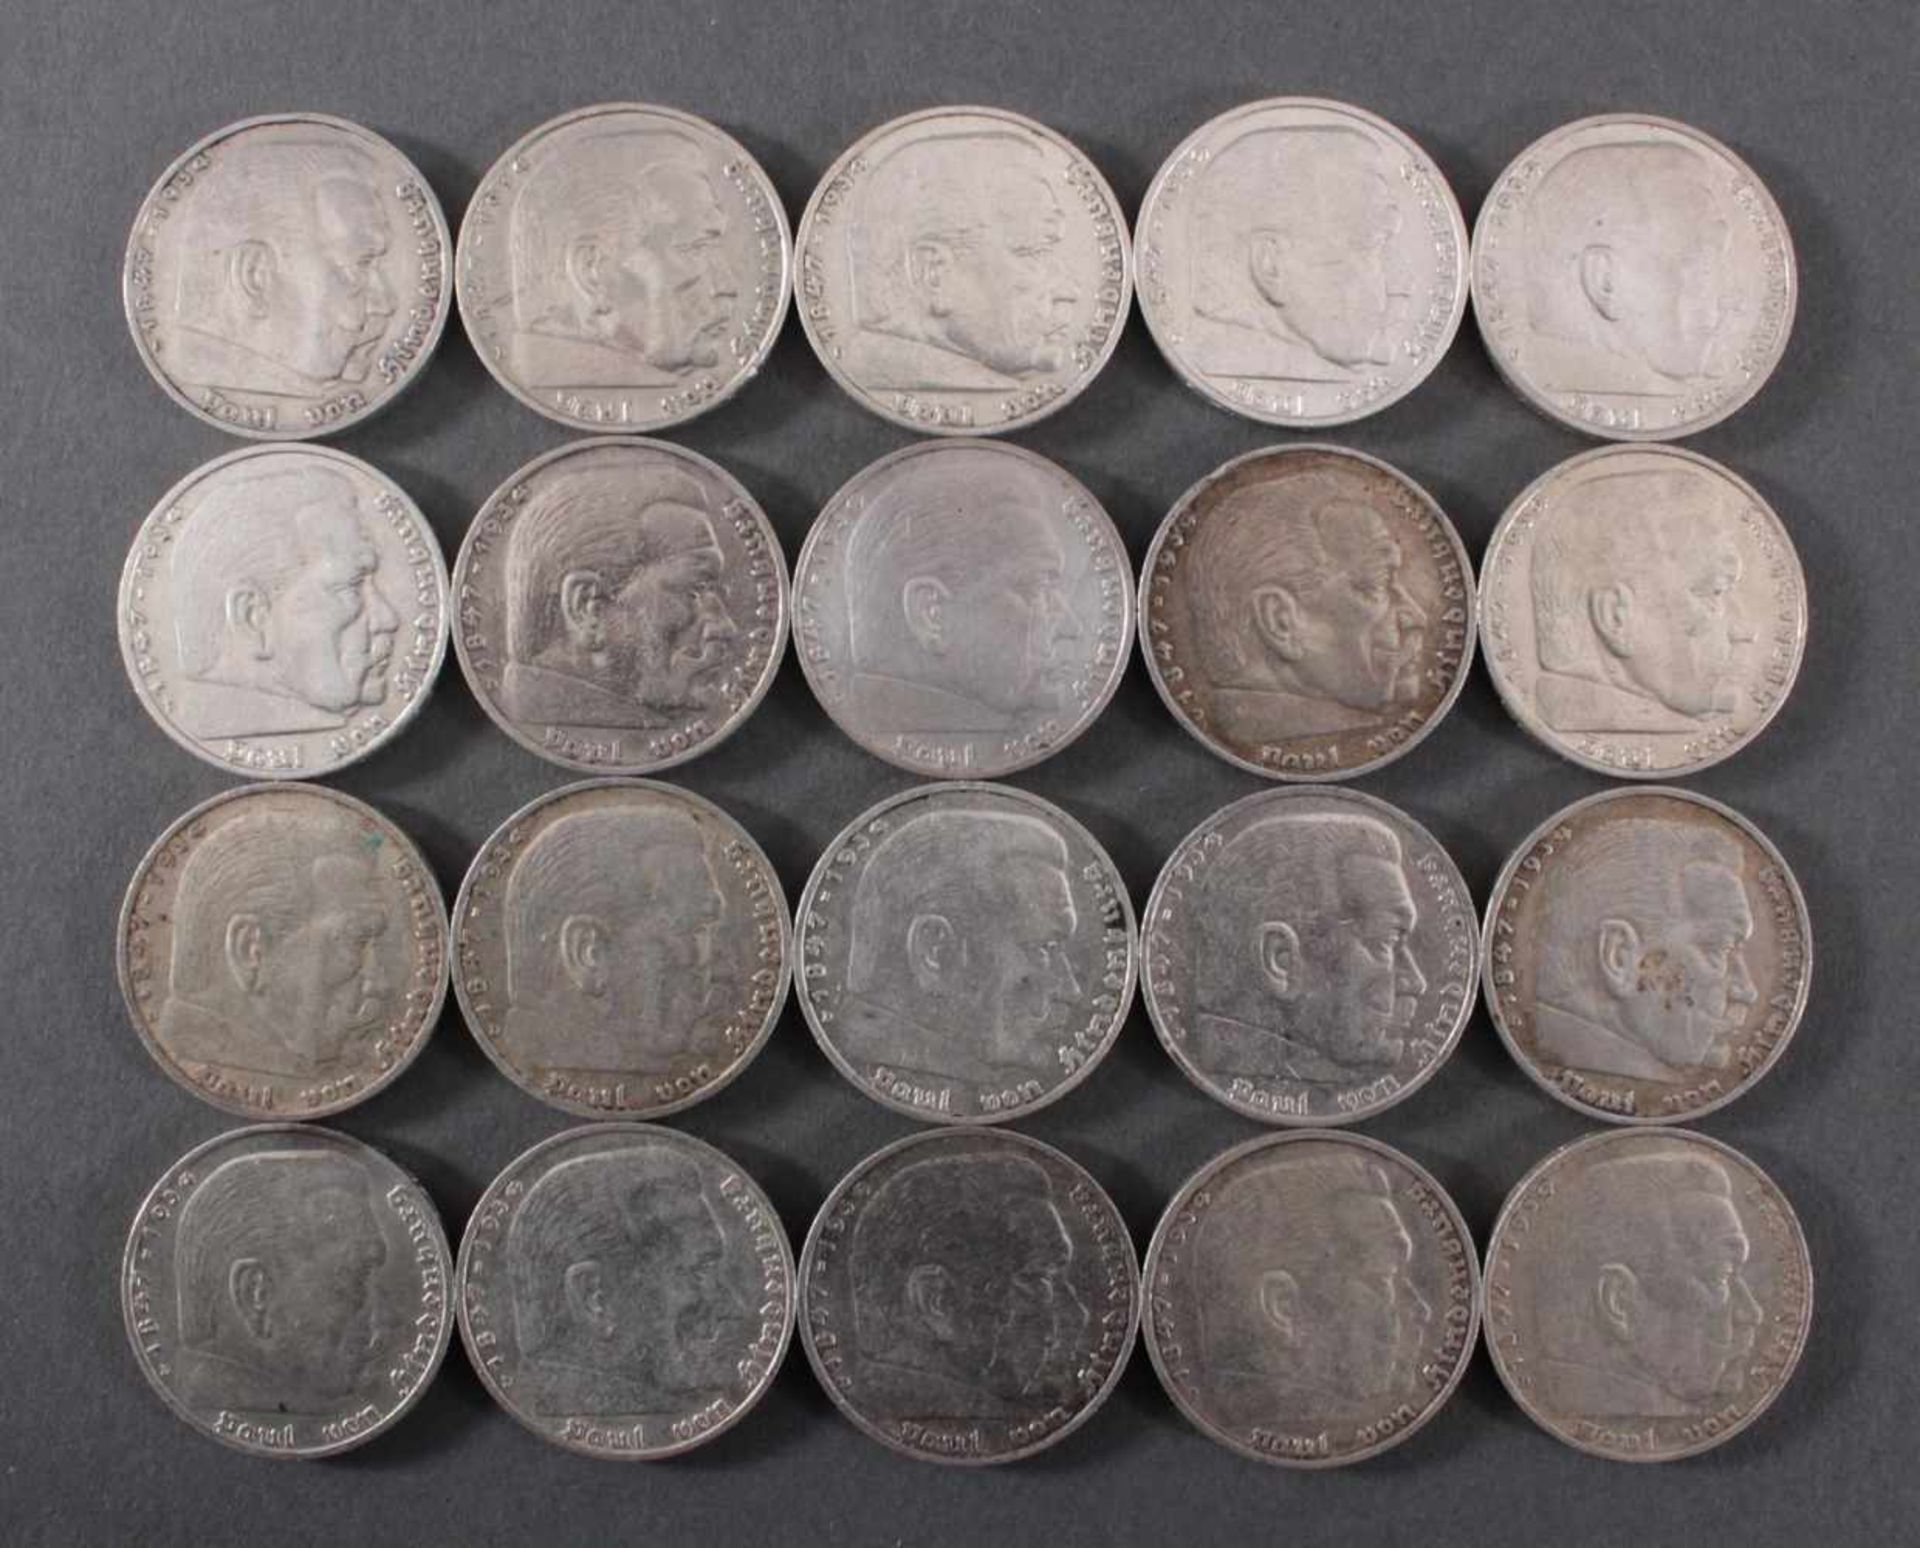 Deutsches Reich, 20x 5 ReichsmarkSilber, 10x 5 Reichsmark 1935 D und 10x 5 Reichsmark 1936 D